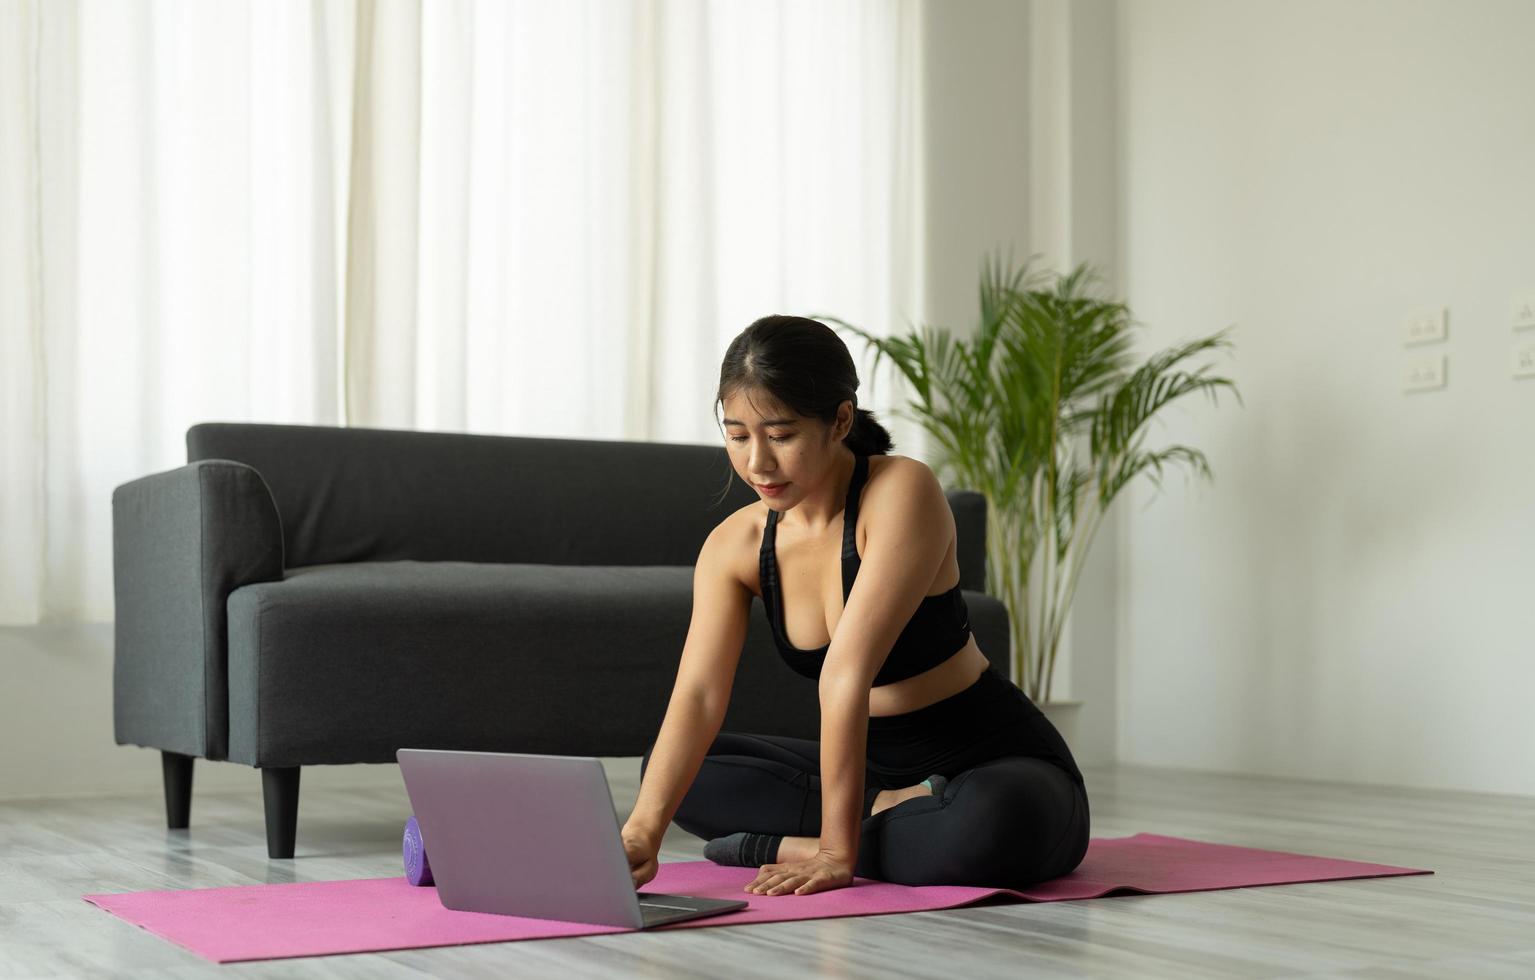 asiatische frau mit laptop-computer im yoga-studio - fitness, technologie und gesundes lebensstilkonzept foto